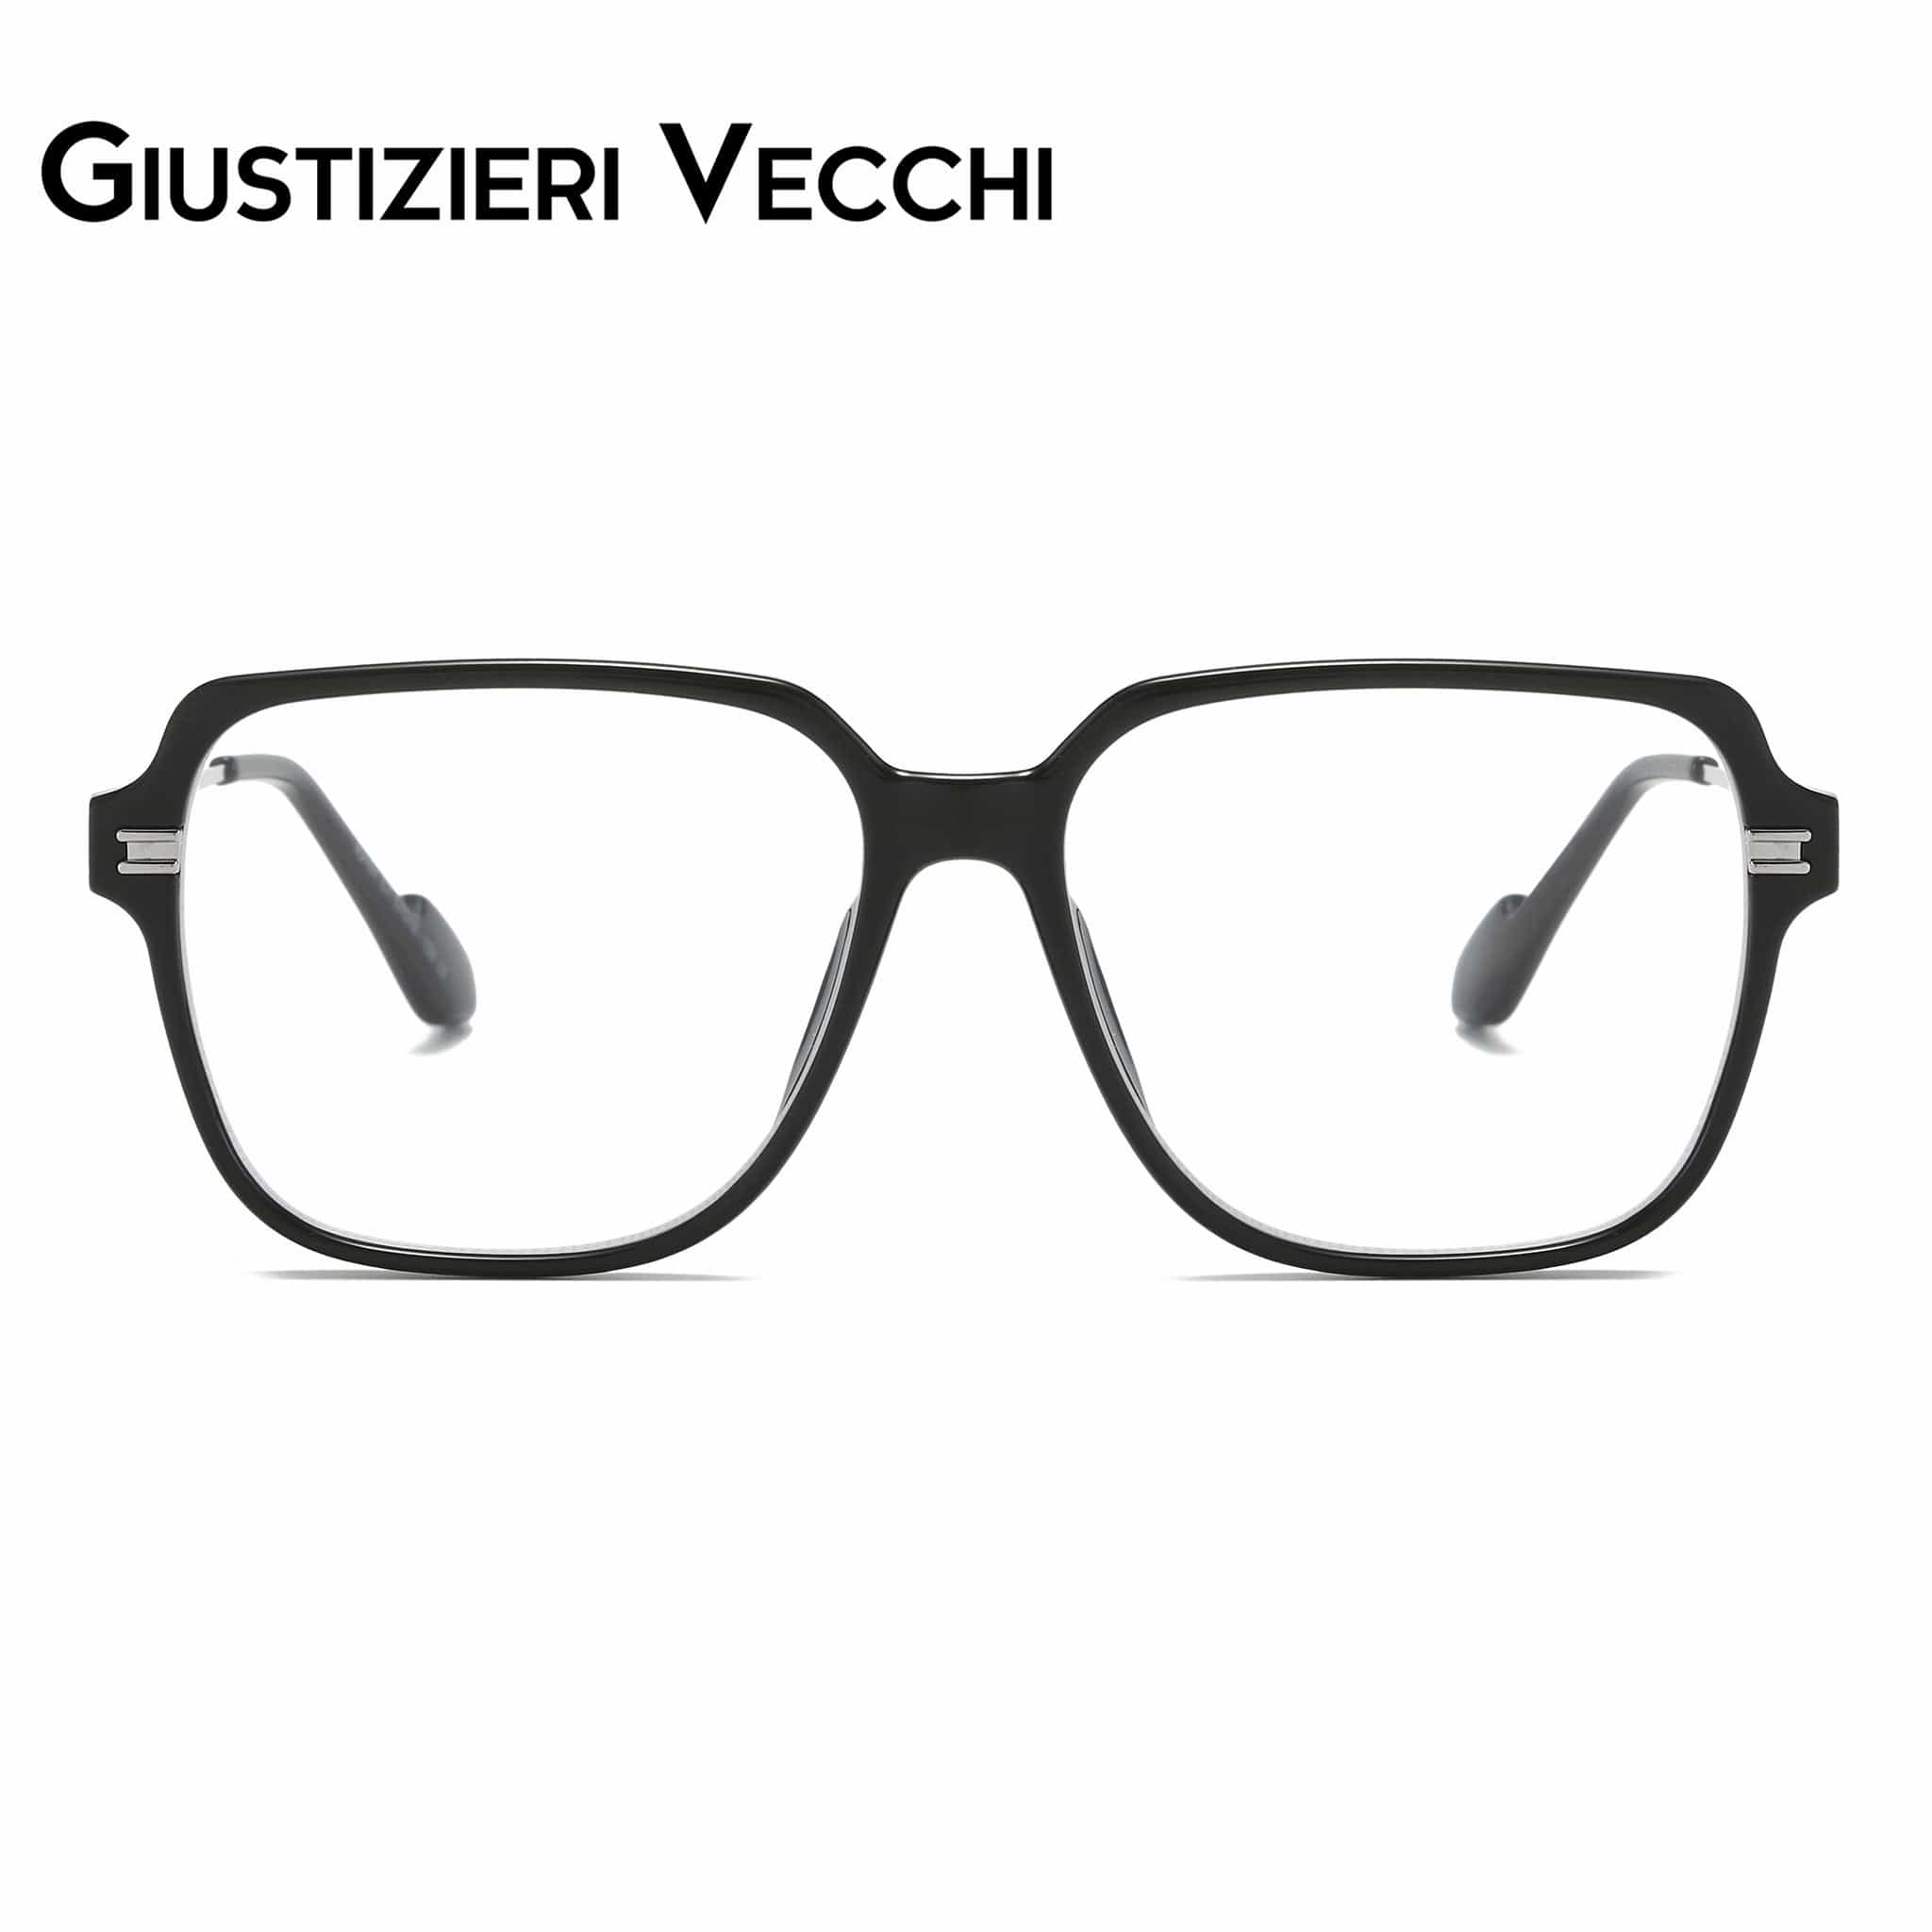 GIUSTIZIERI VECCHI Eyeglasses Large / Black with Silver MysticRider Uno